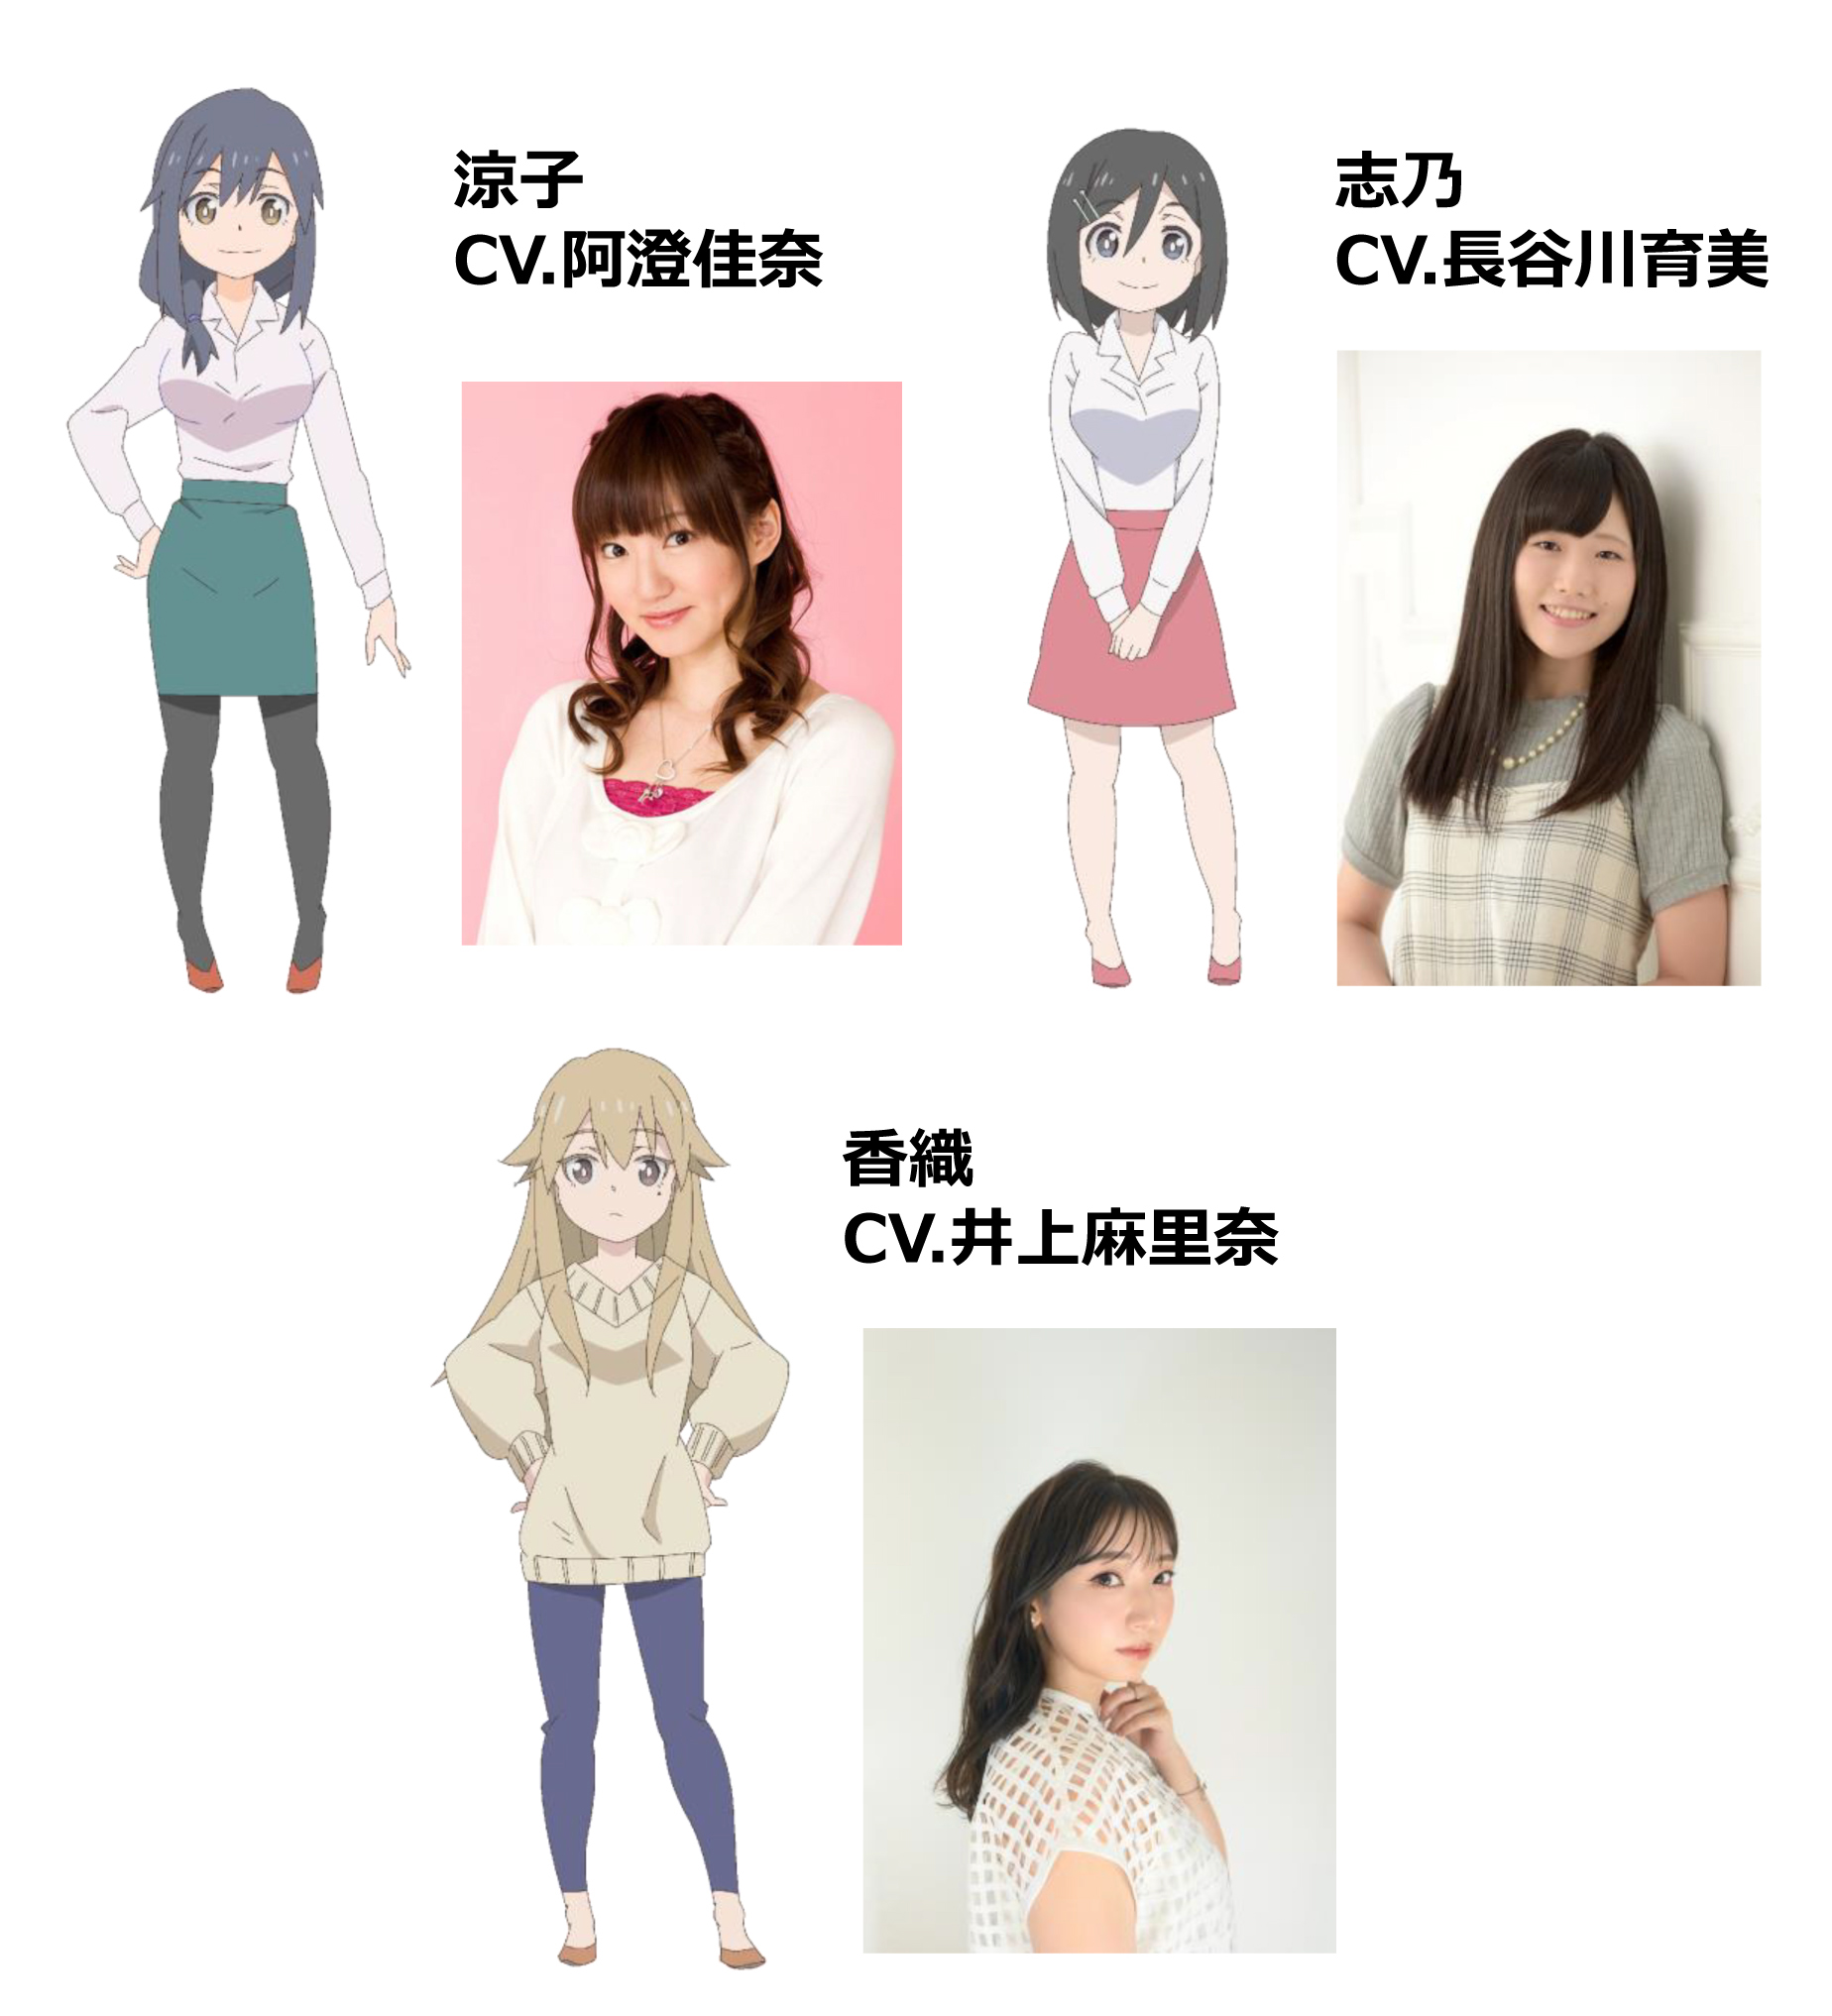 Charaktereinstellungen von Ryoko, Shino und Kaori sowie ihren entsprechenden Synchronsprechern (Kana Asumi, Ikumi Hasegawa und Marina Inoue) aus dem kommenden TV-Anime Shachiku-san wa Youjo Yurei ni Iyasaretai.